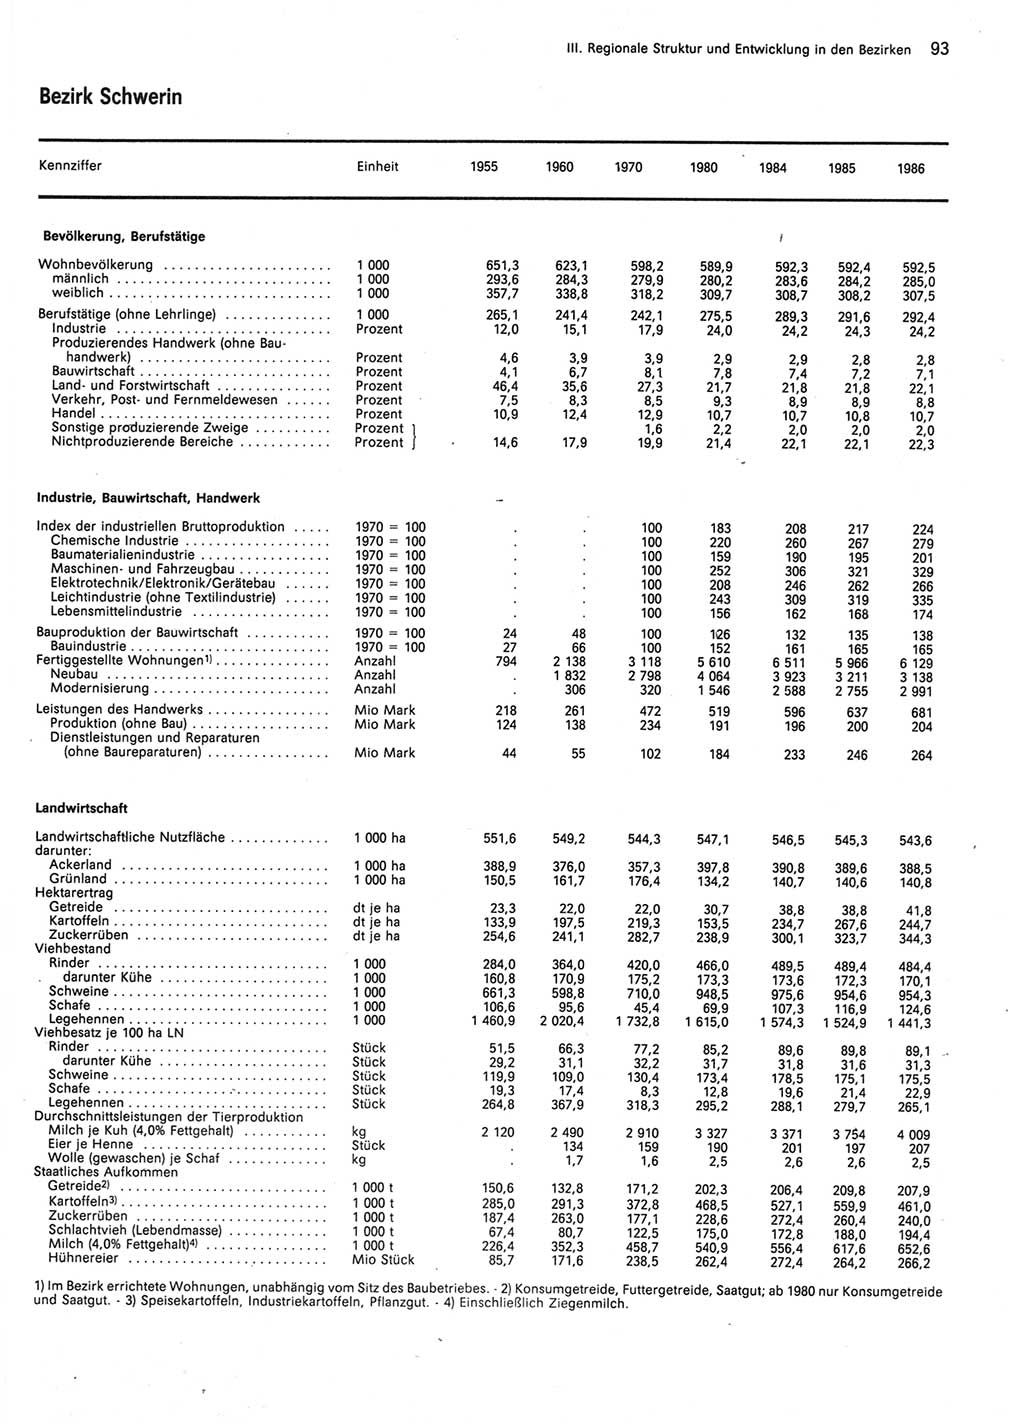 Statistisches Jahrbuch der Deutschen Demokratischen Republik (DDR) 1987, Seite 93 (Stat. Jb. DDR 1987, S. 93)